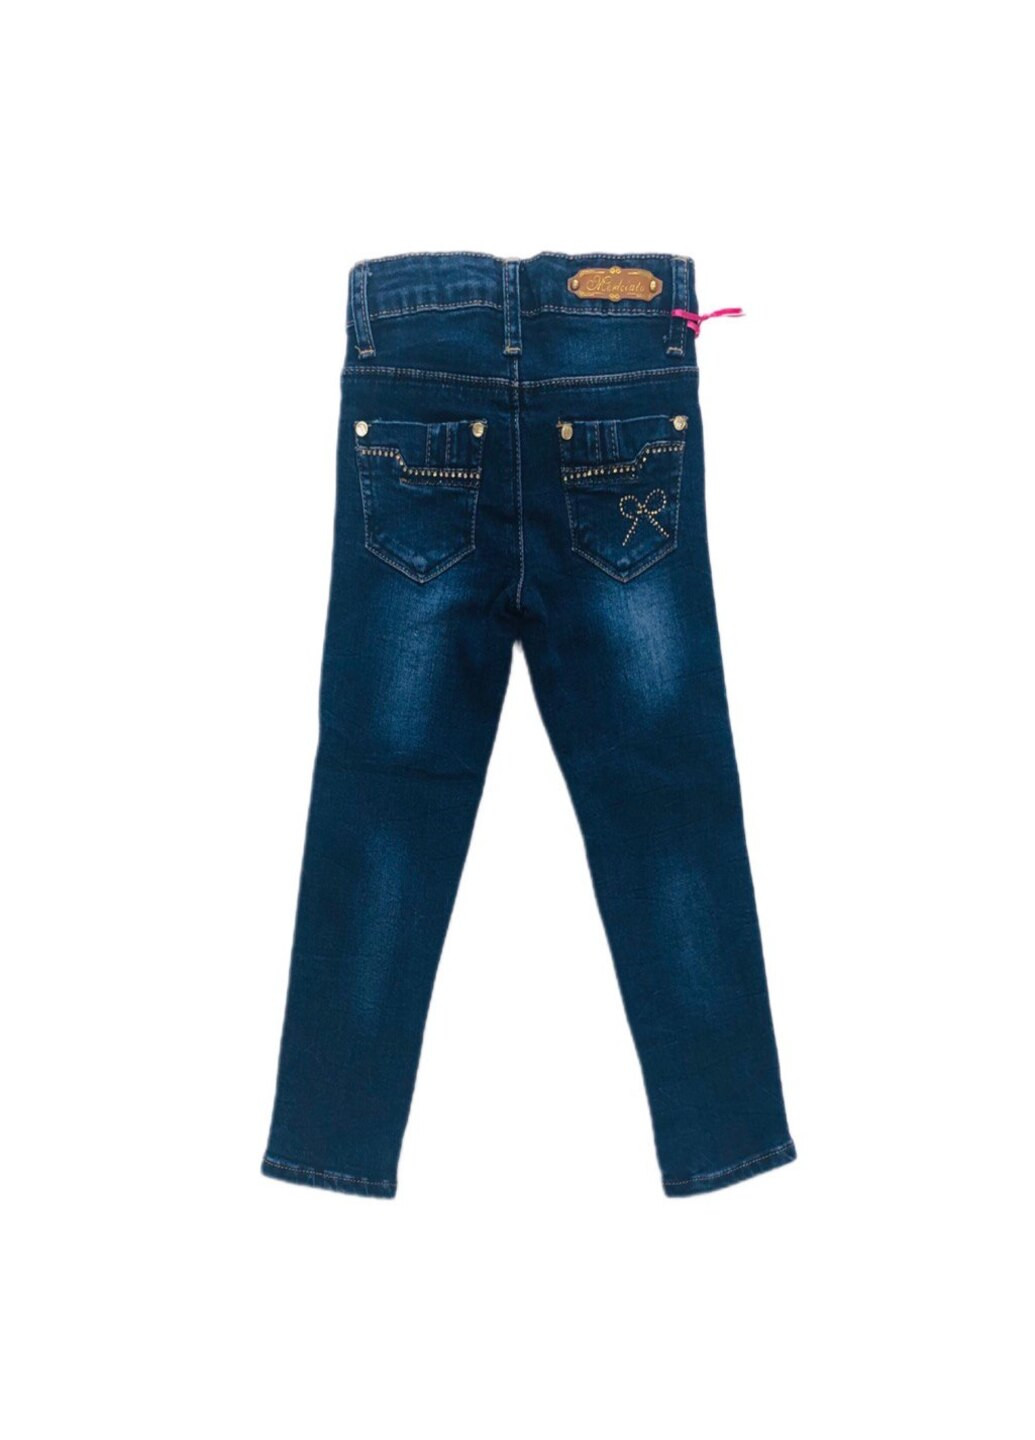 Синие демисезонные джинсы для девочки Merkiato